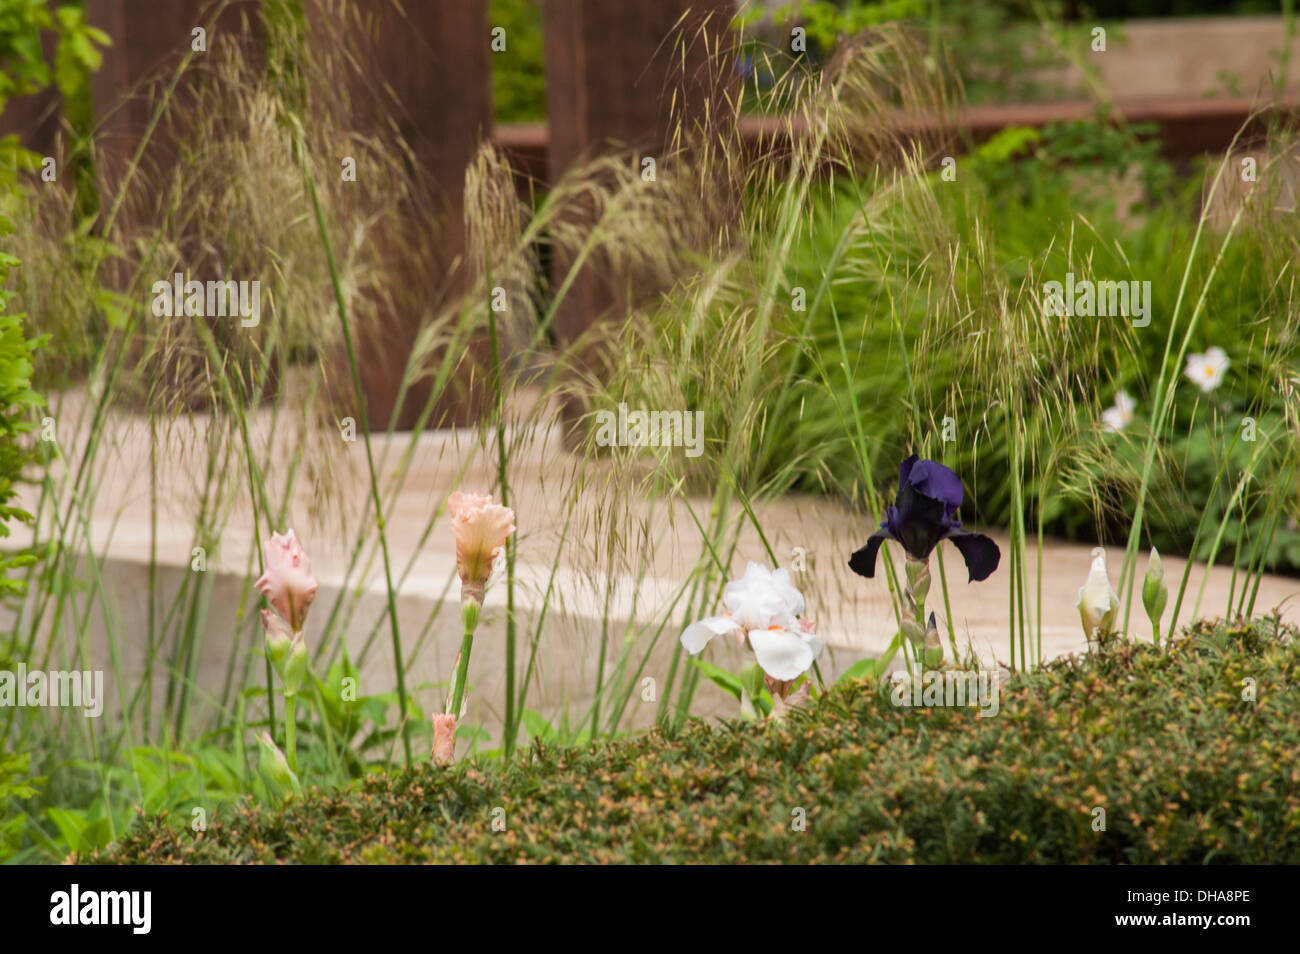 Chelsea Flower Show 2013, Laurent Perrier garden, Designer Ulf Nordfjell. Gold medal. Stock Photo